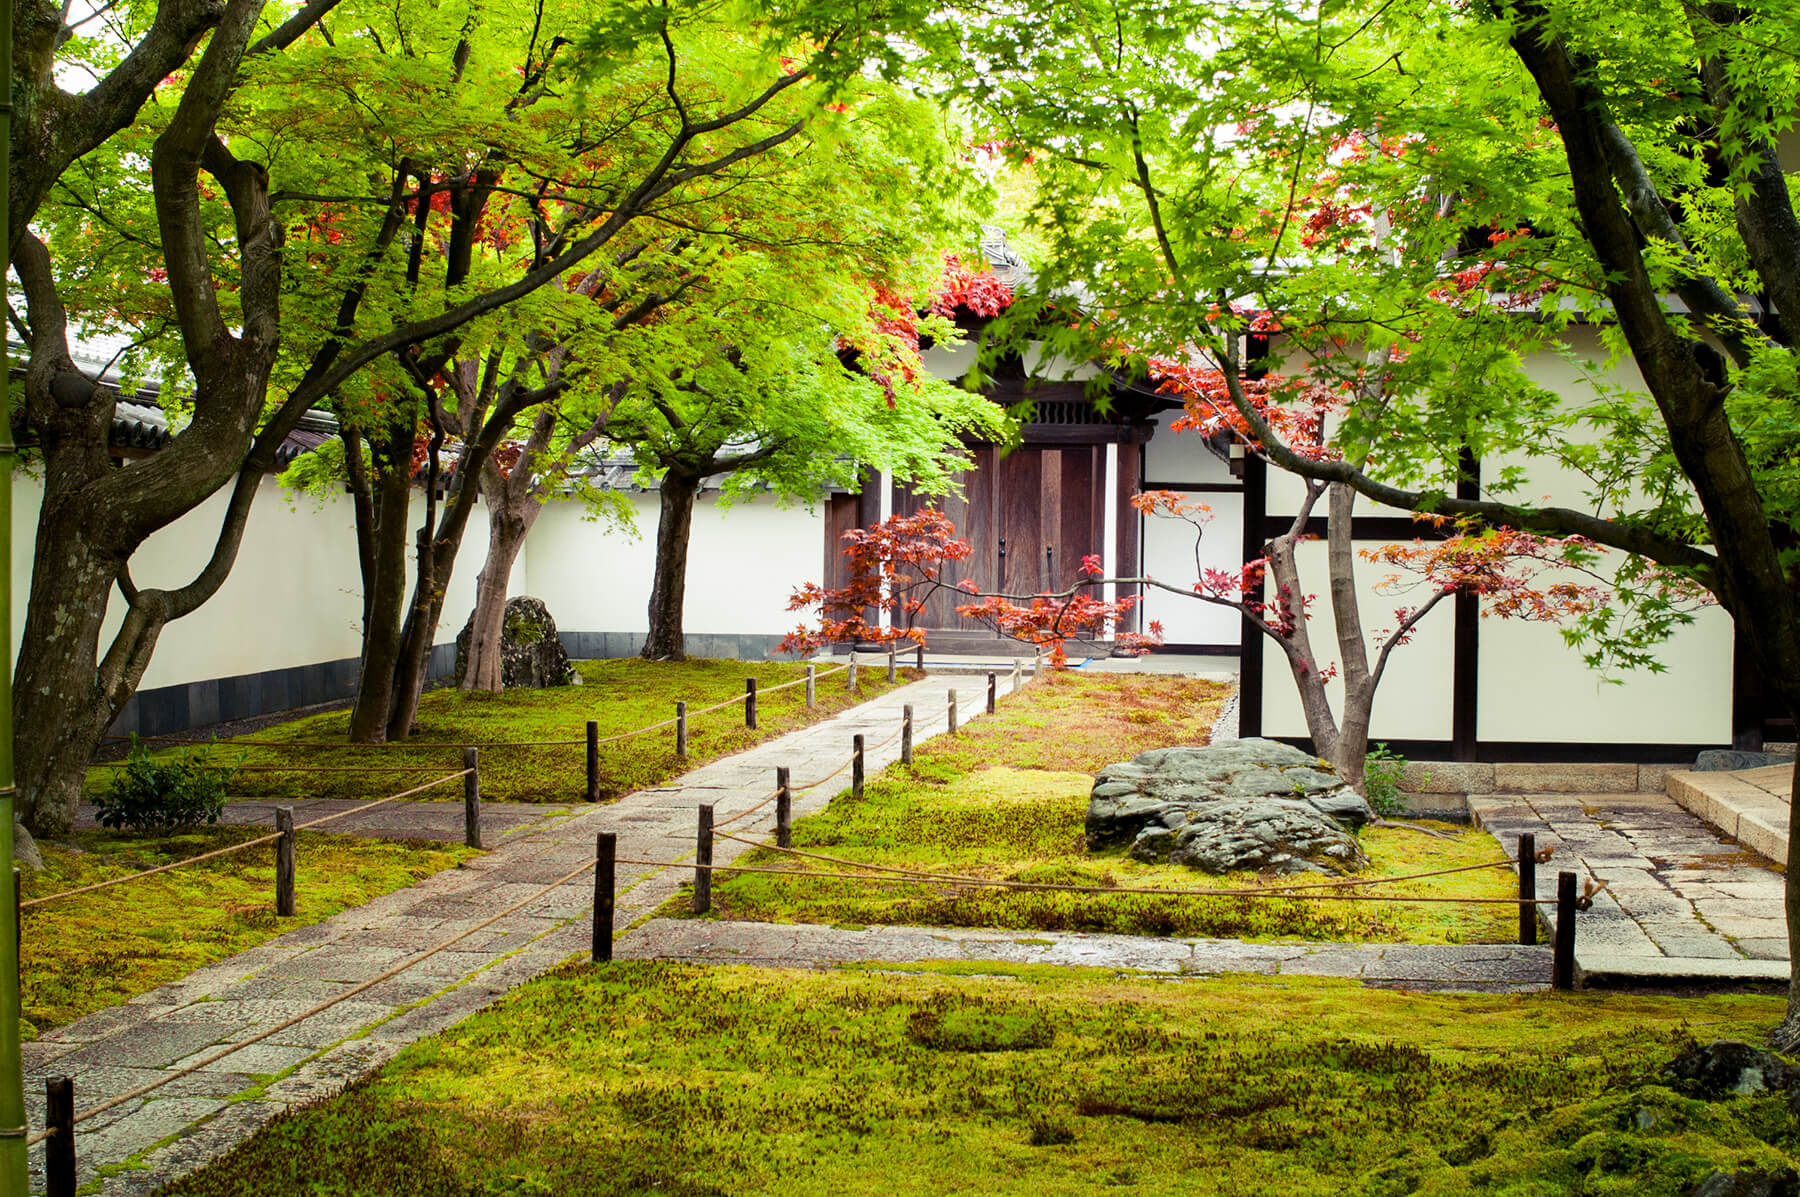 
          京都「大徳寺黄梅院」の庭園写真1
      